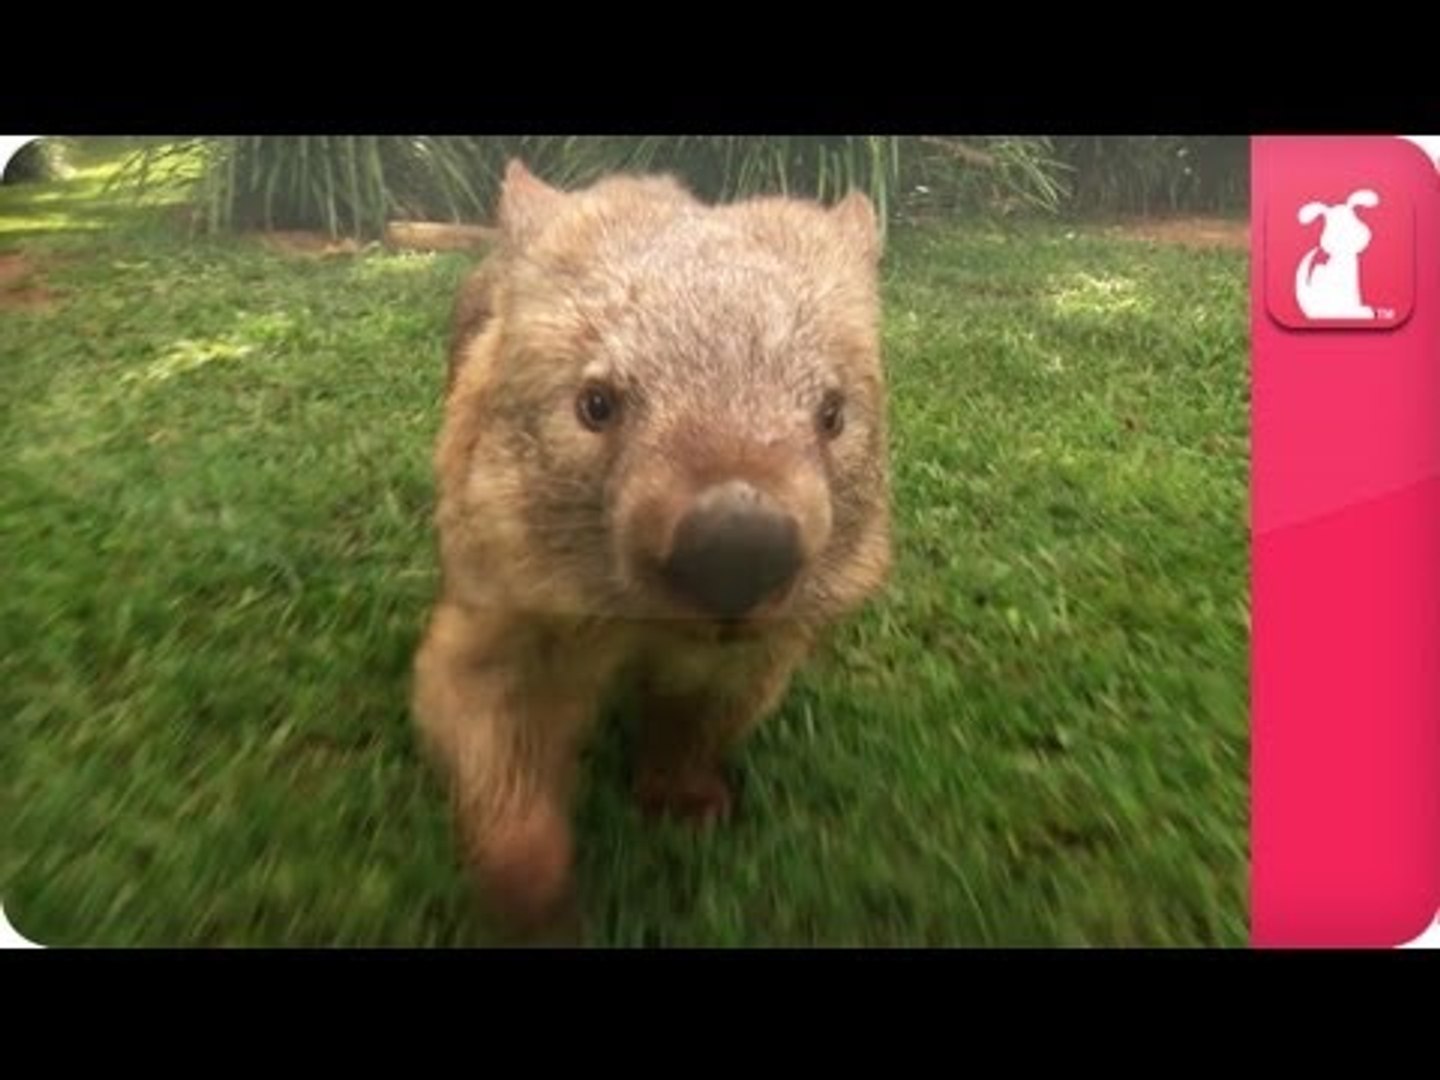 Bindi & Robert Irwin feature - Wombat (Kato)- Growing Up Wild.